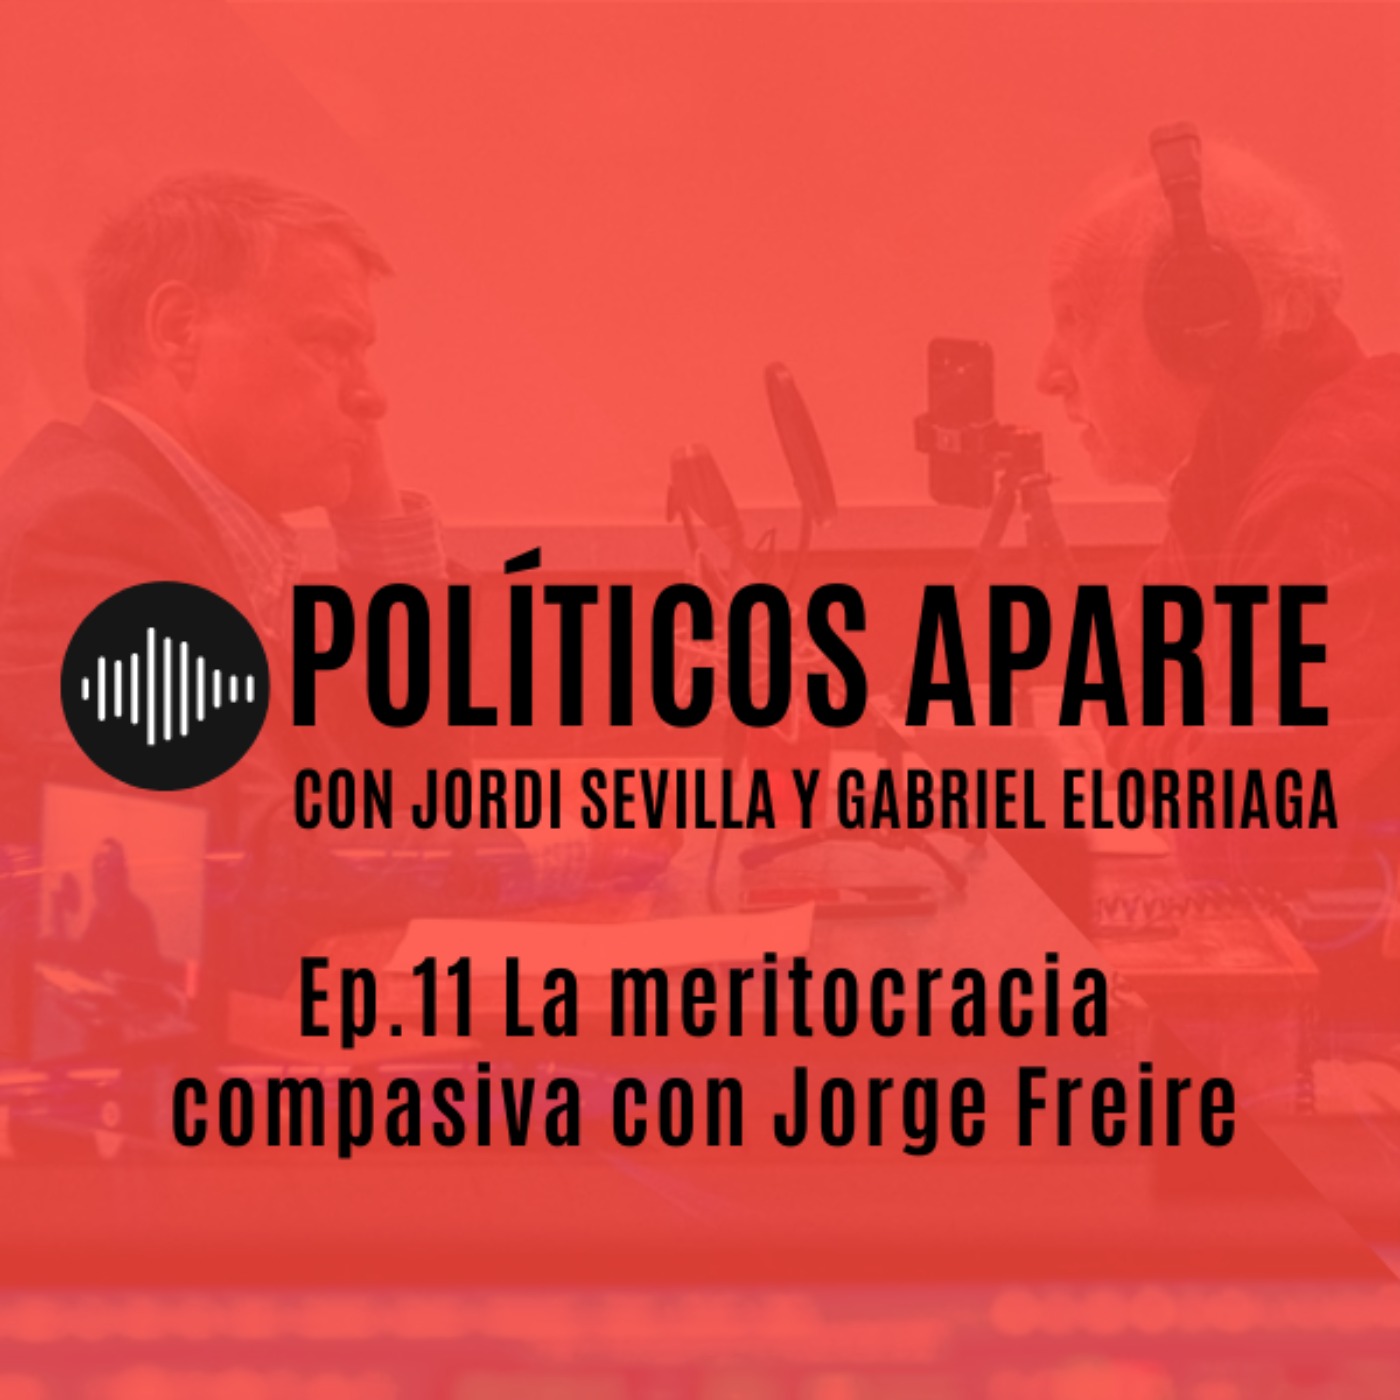 Ep.11 La meritocracia compasiva con Jorge Freire